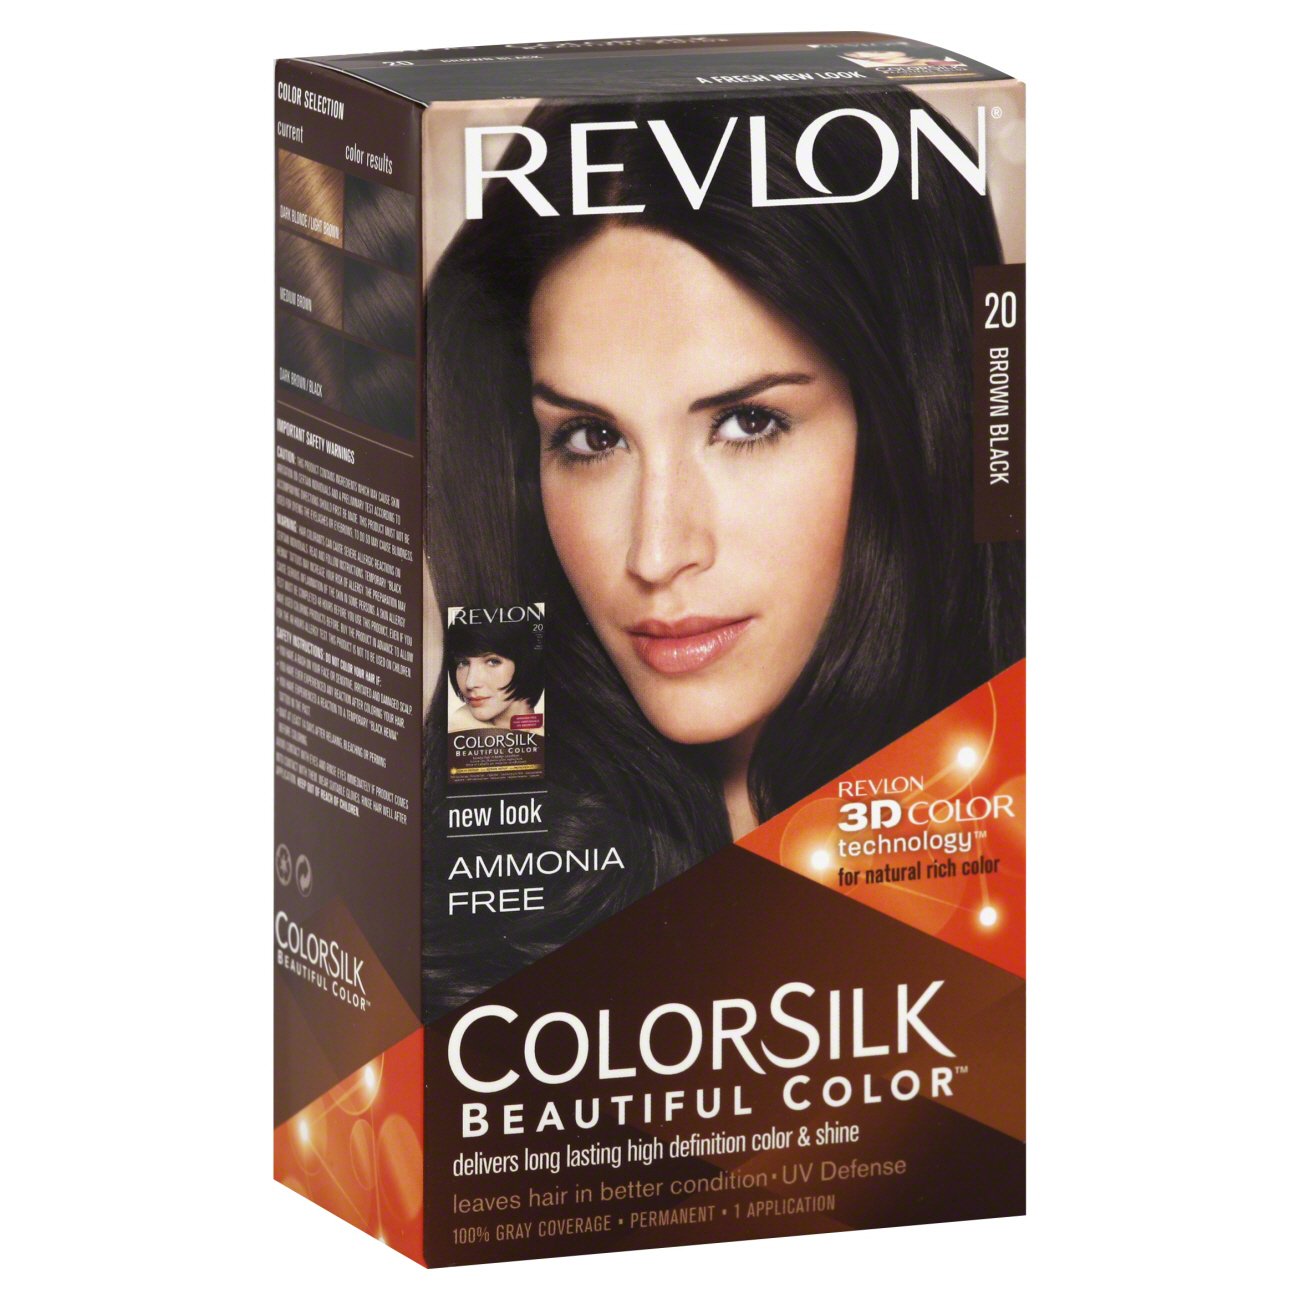 Revlon Colorsilk Beautiful Color 20 Brown Black Shop Hair Color At H E B